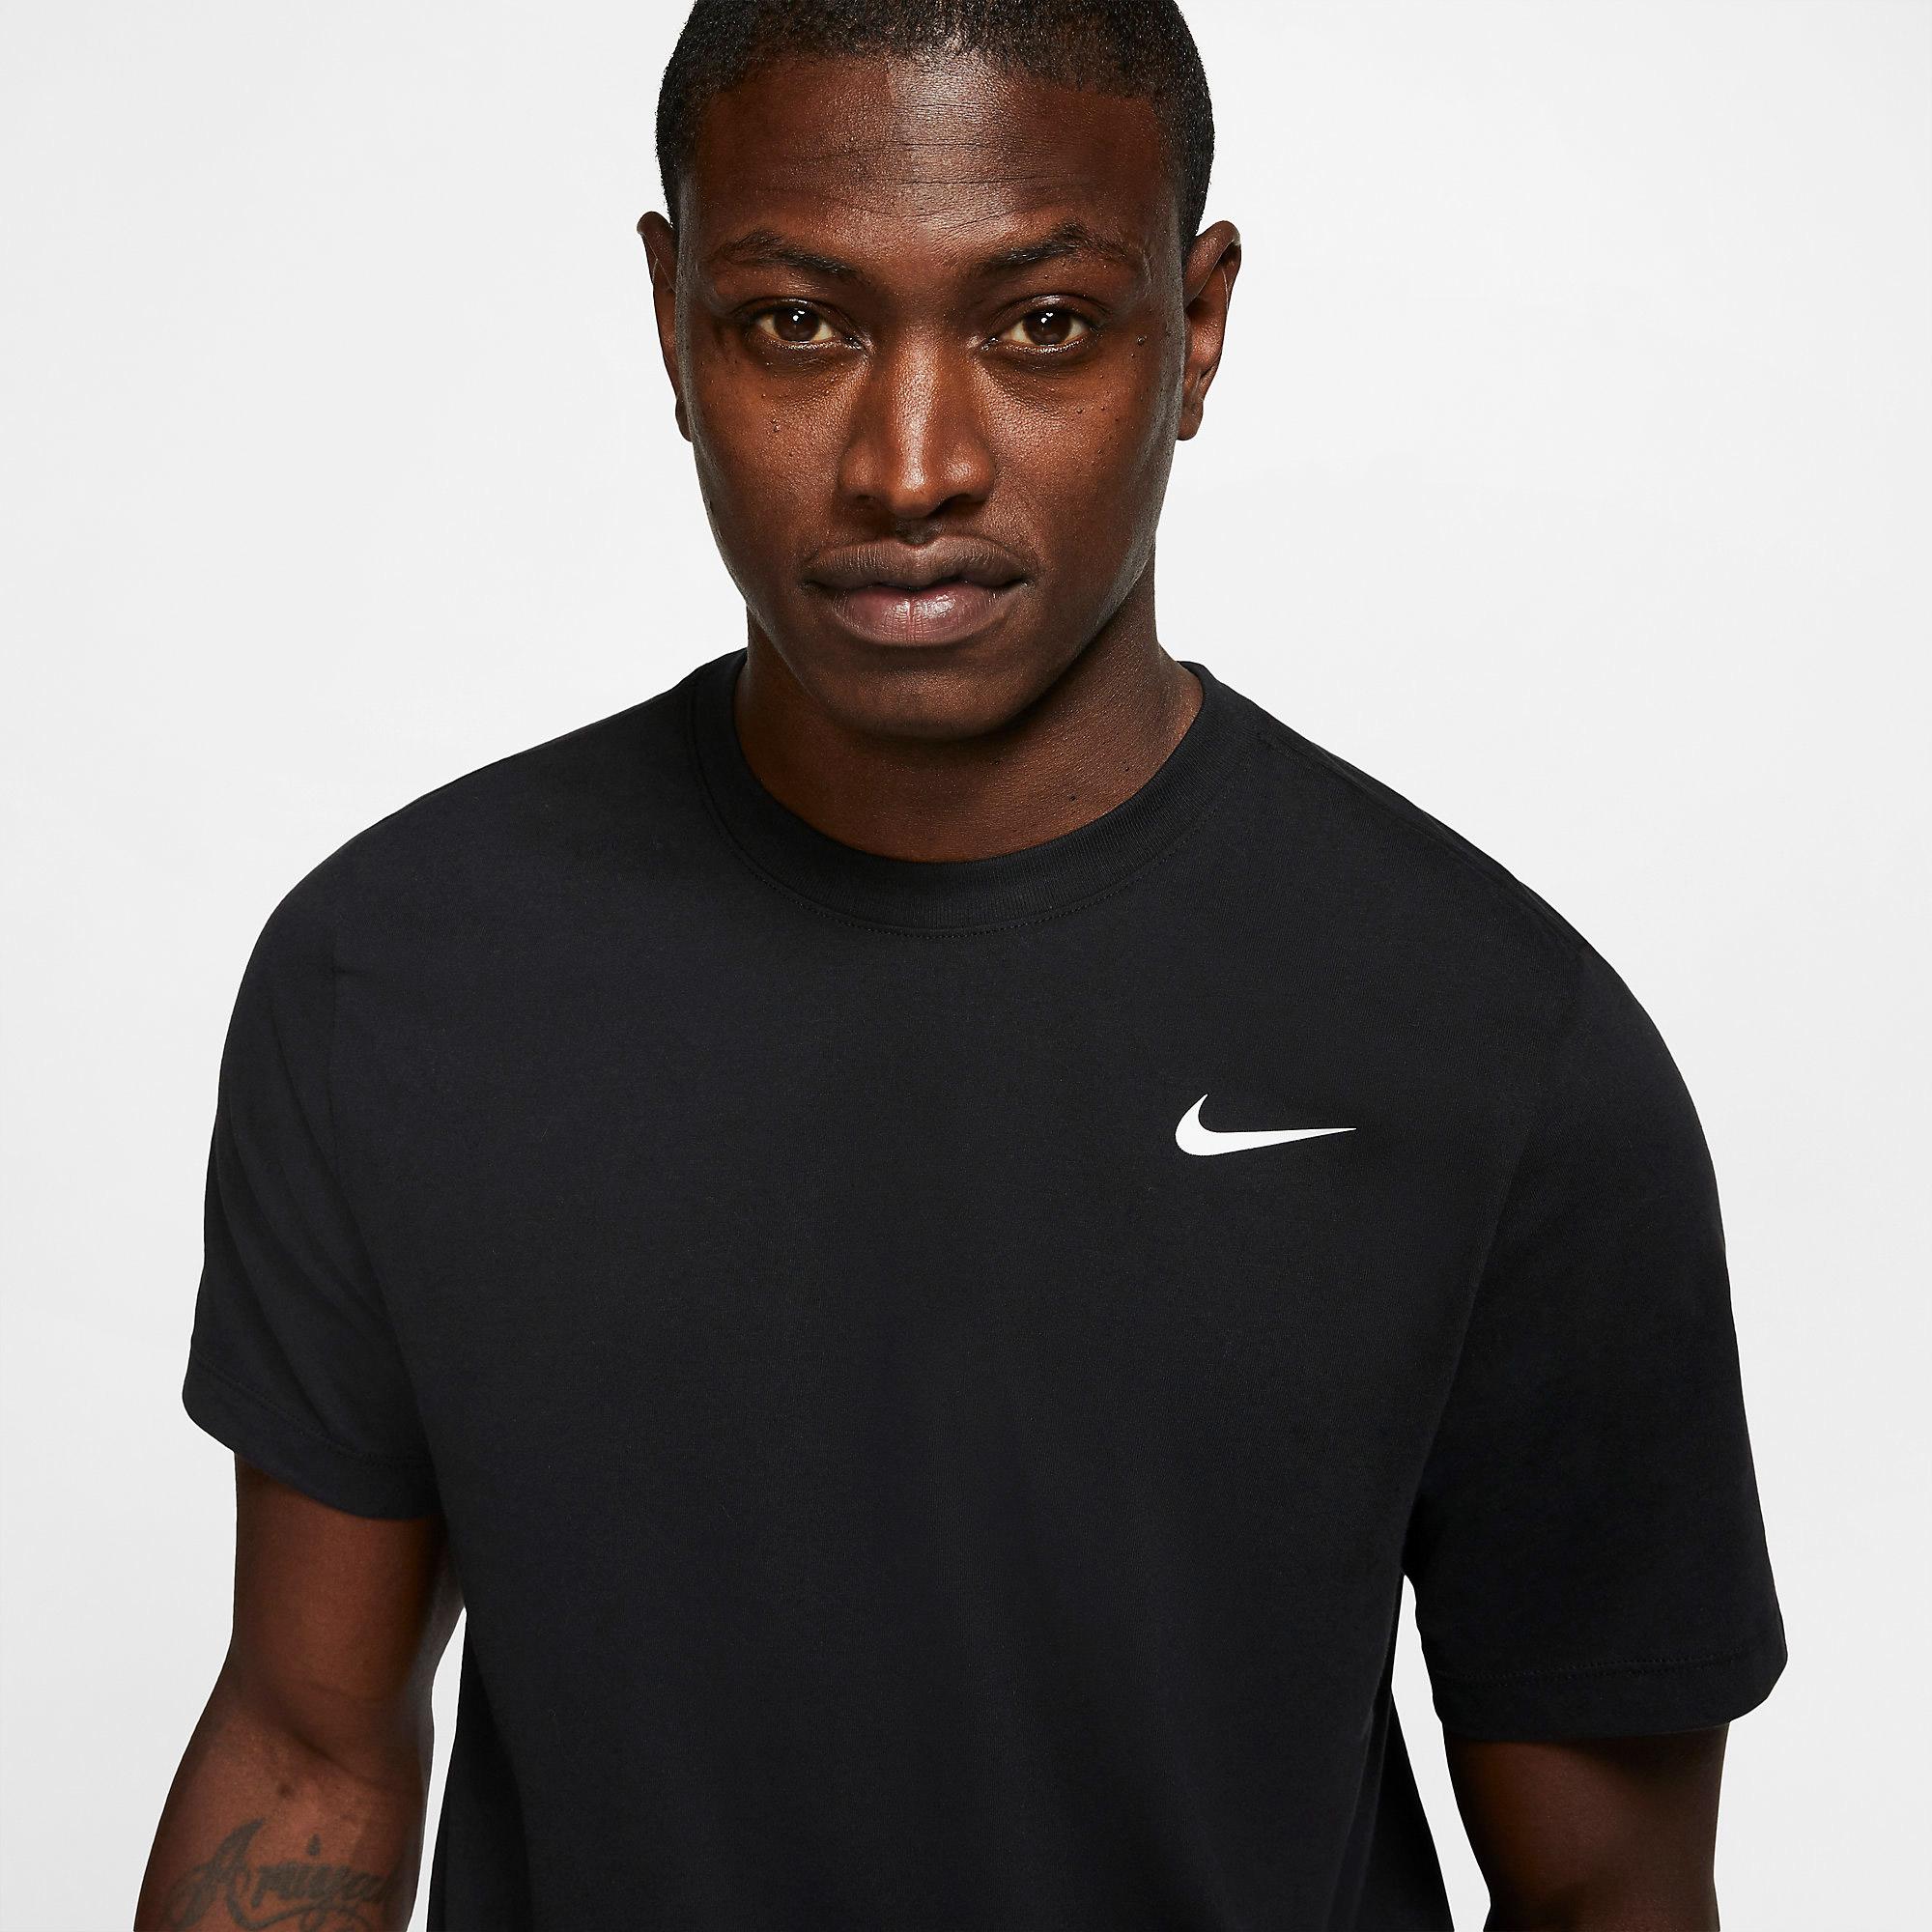 Nike Mens Dri-FIT Training Top - Black - Tennisnuts.com